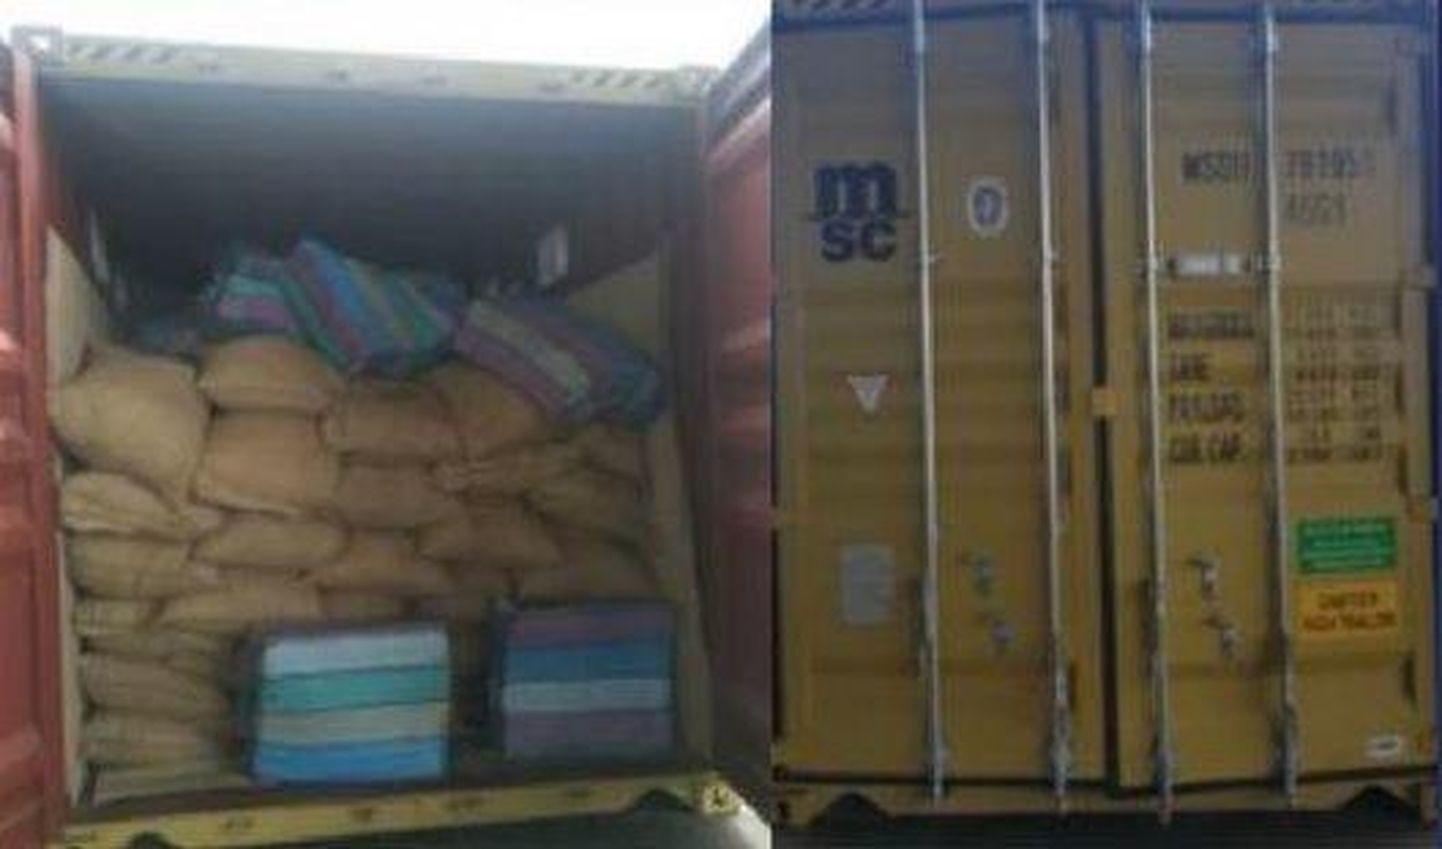 Ecuadori siseminister Patricio Pazmiño jagas jaanuari keskel Twitteris fotot Eestisse jõudma pidanud konteinerist, milles oli 1,3 tonni kokaiini, mille väärtuseks hinnati sada miljonit eurot.